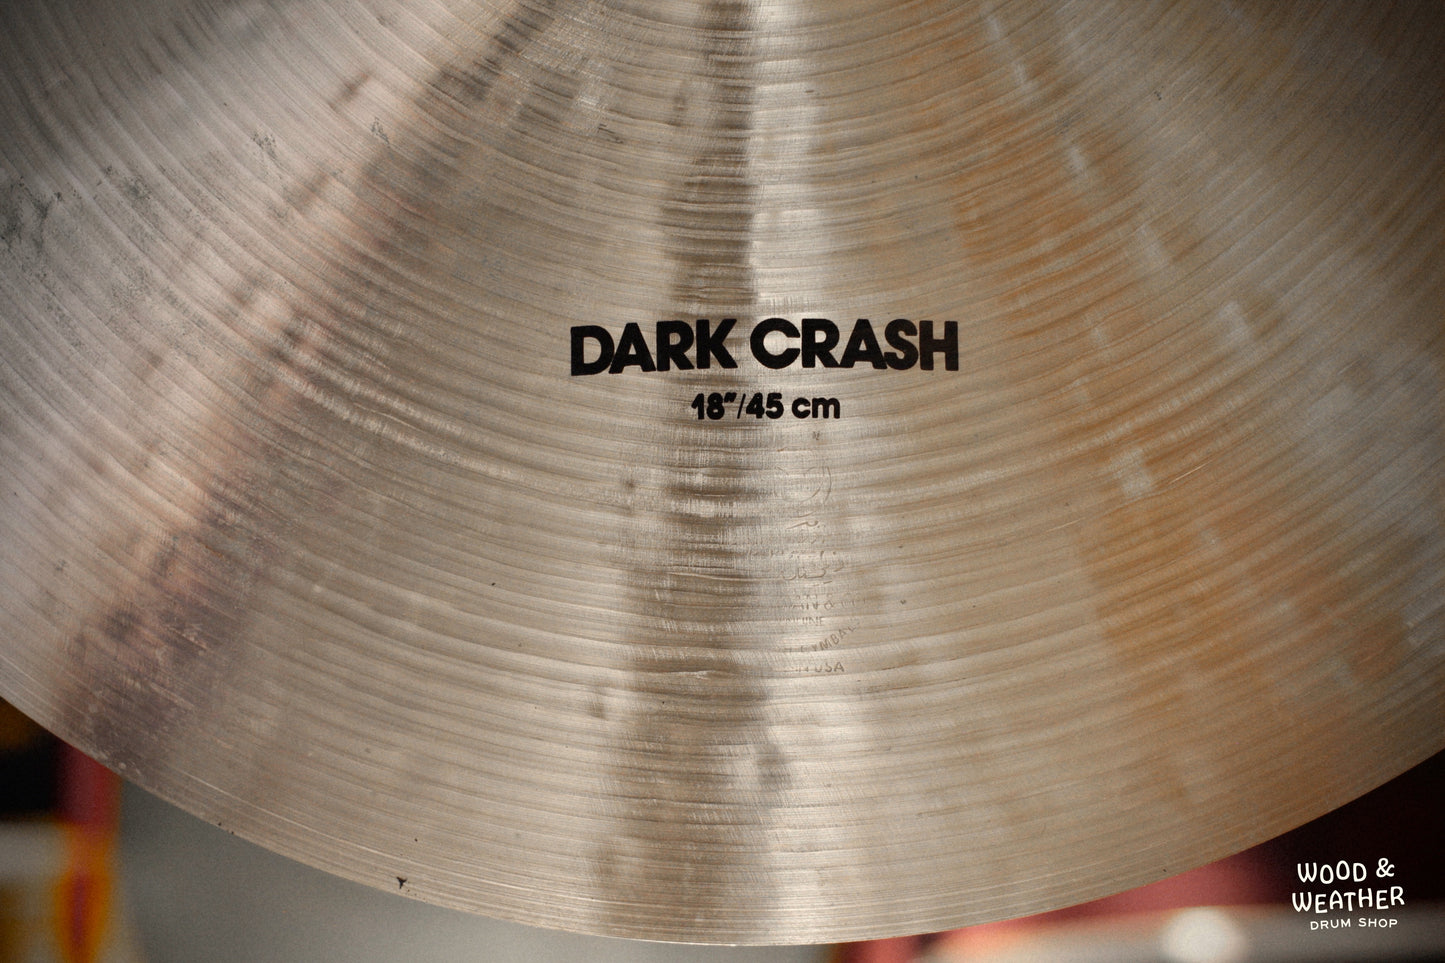 1980s Zildjian 18" K Dark Crash Cymbal 1458g